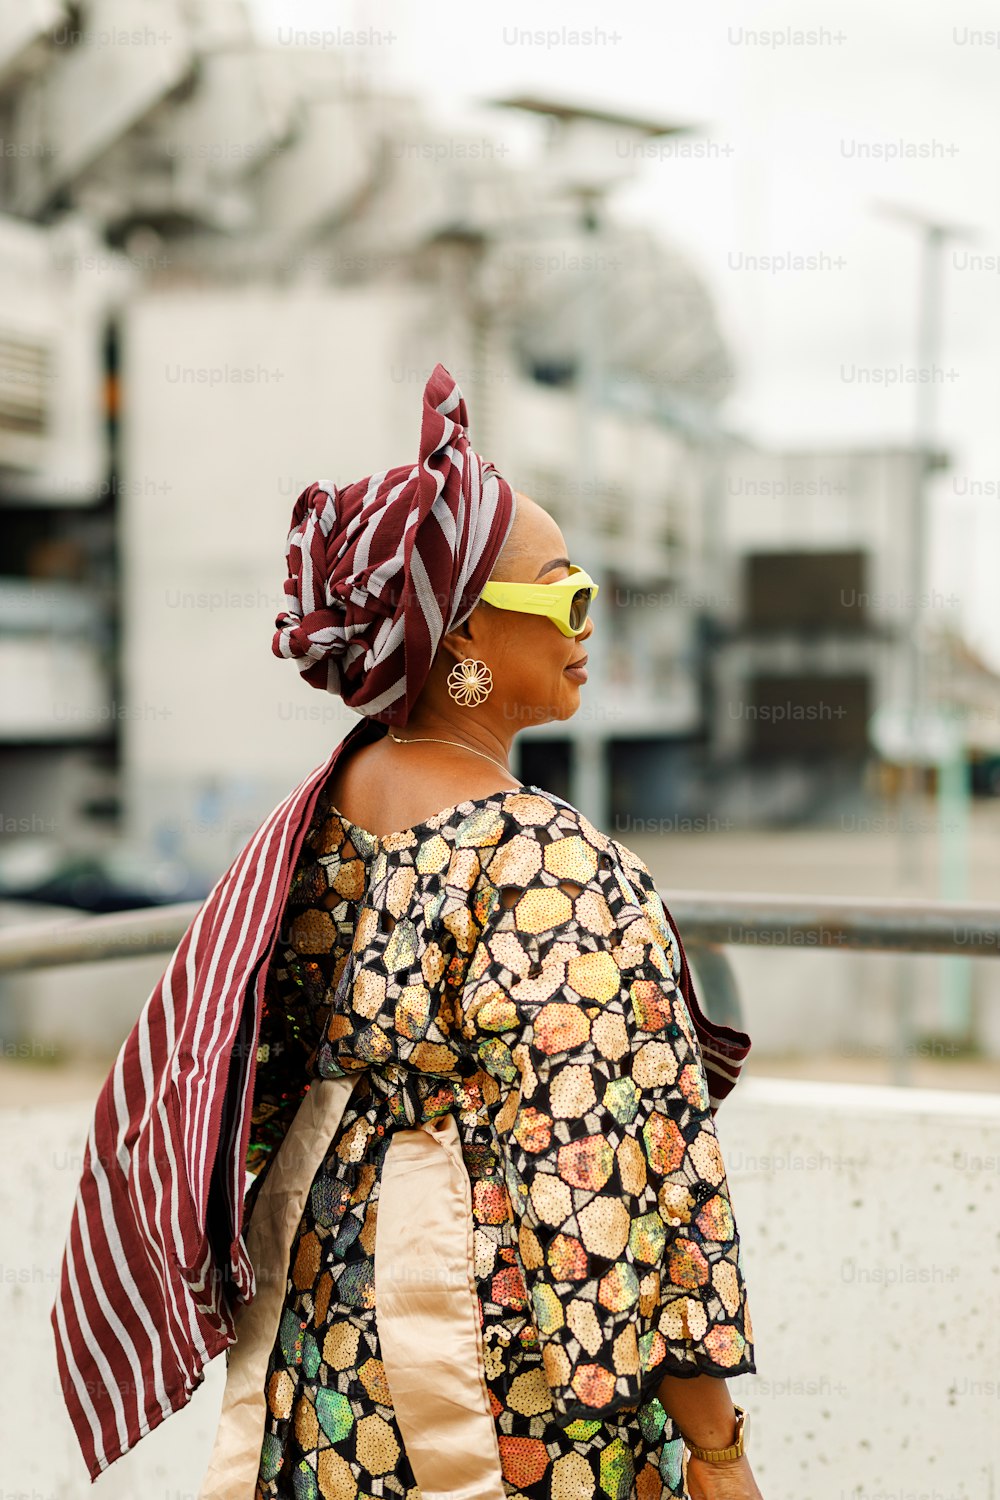 Une femme marchant dans une rue avec un foulard sur la tête